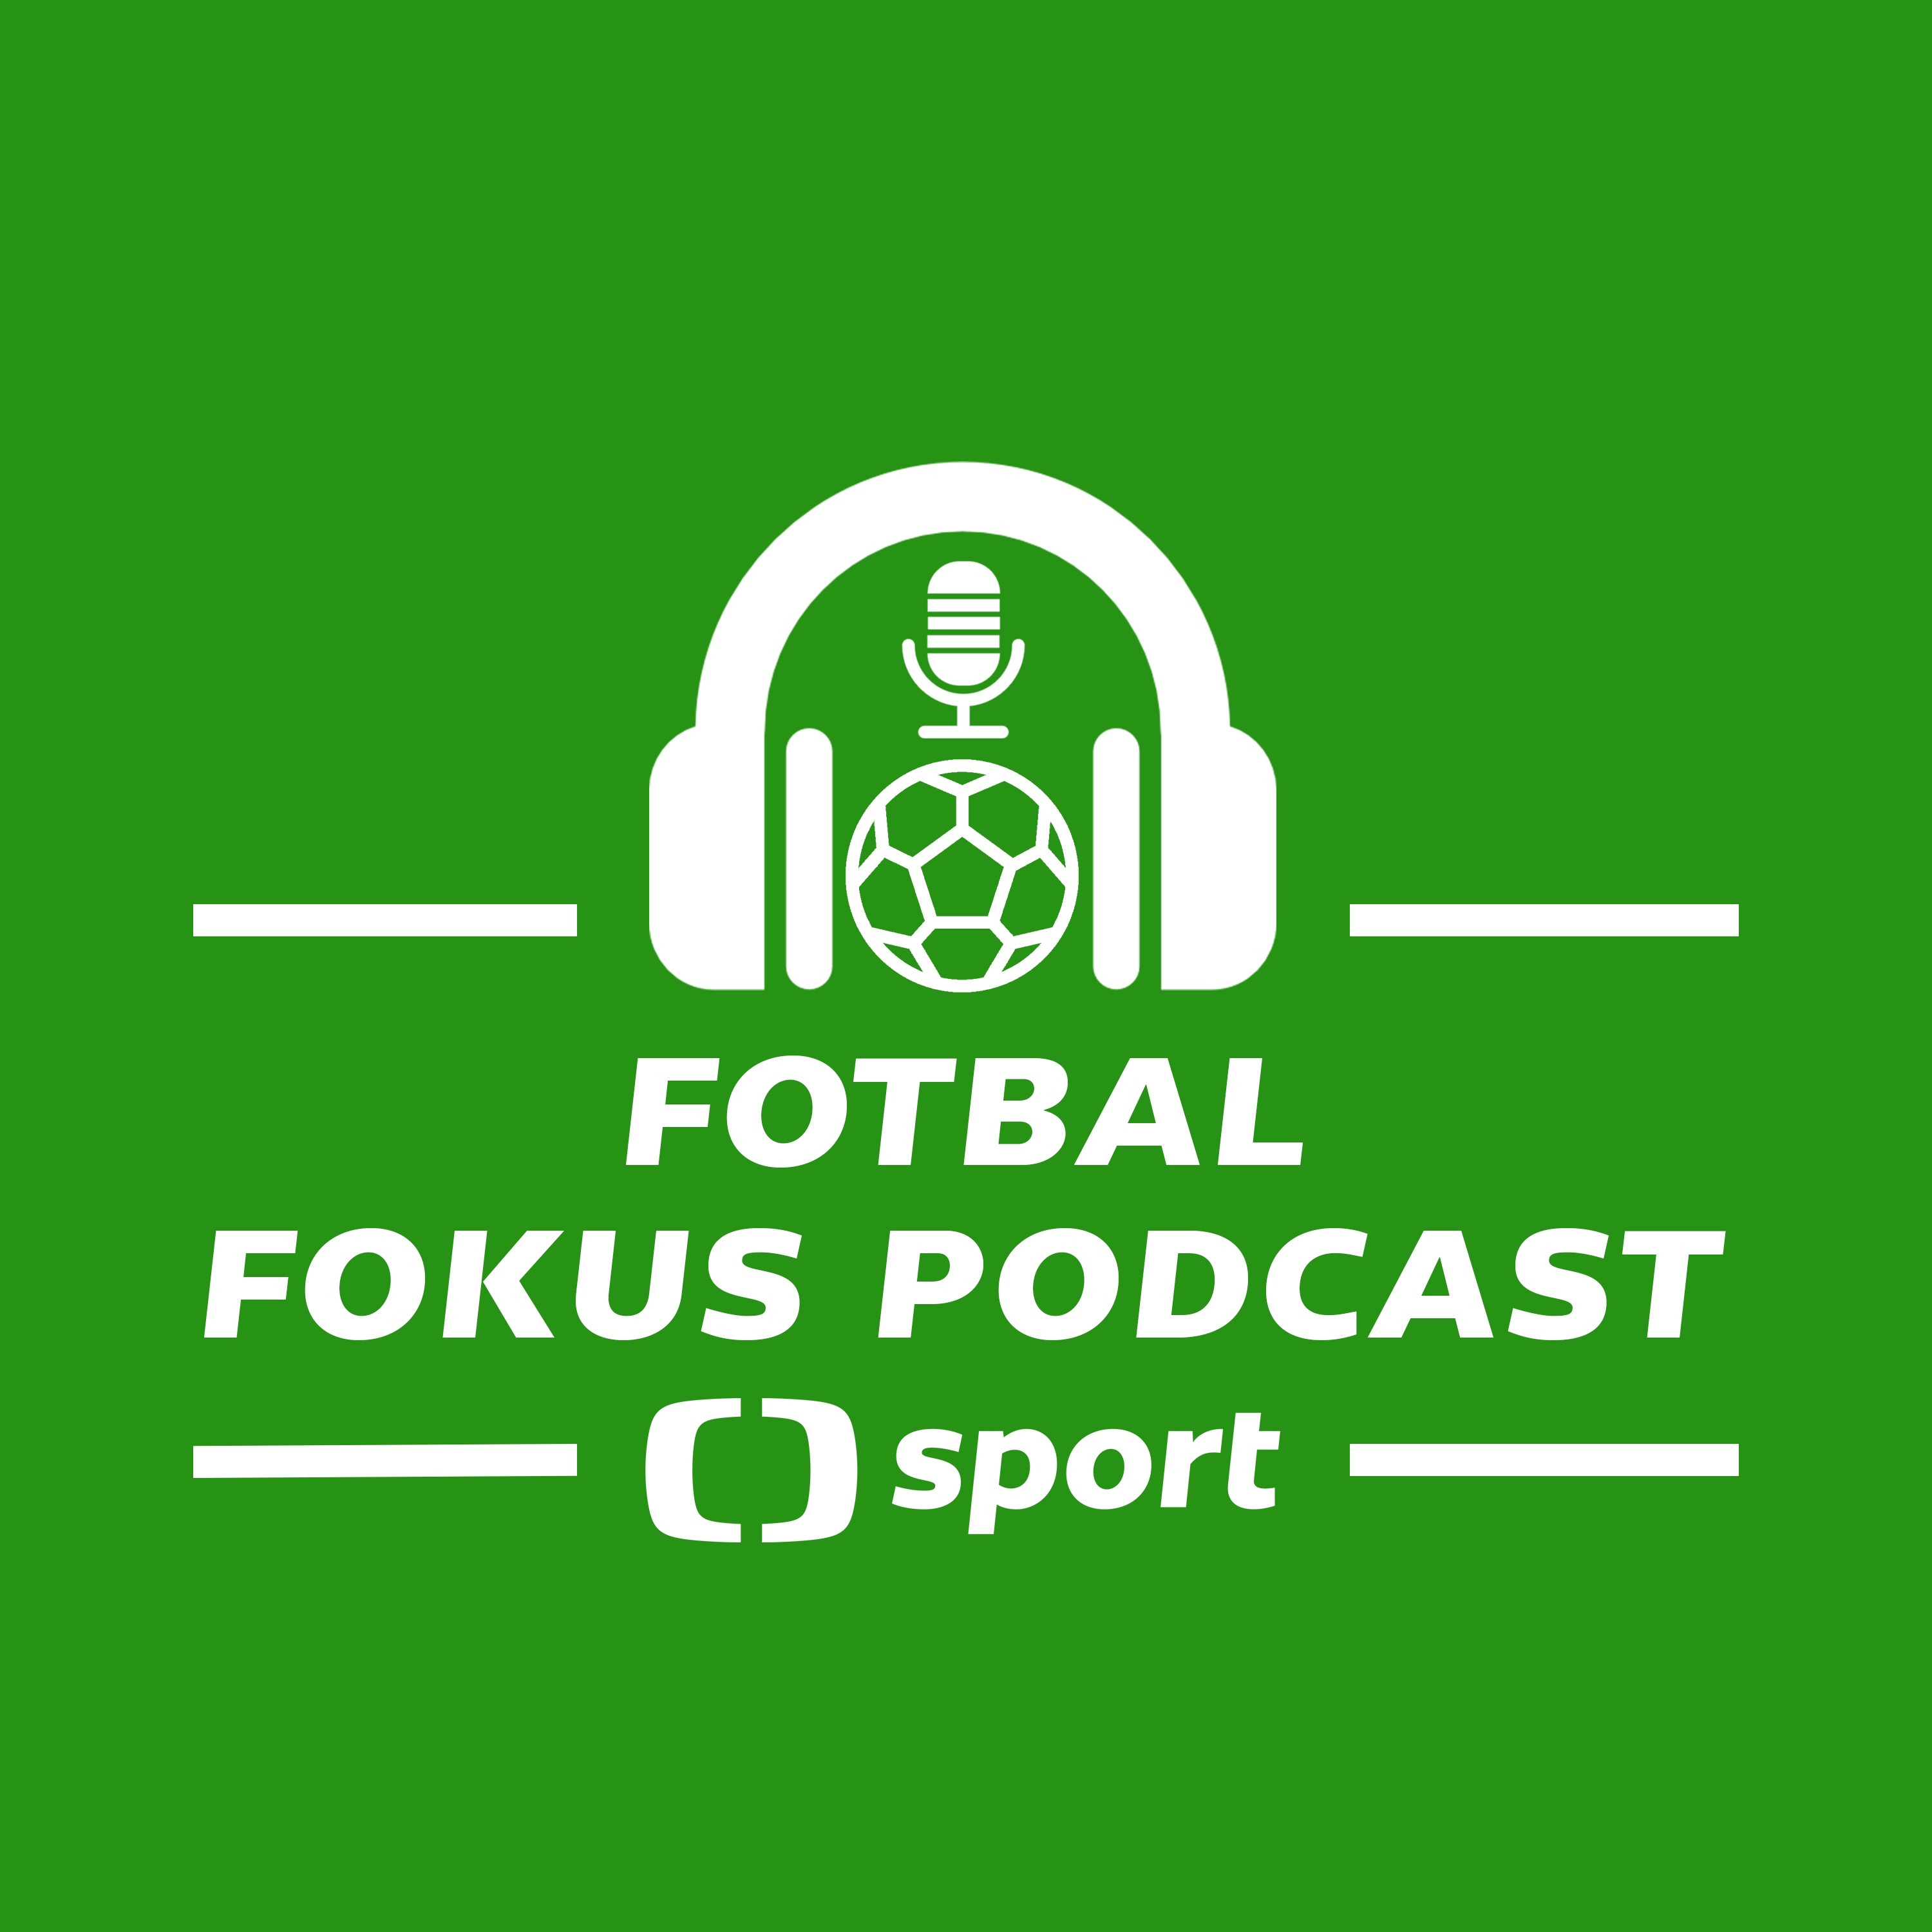 Fotbal fokus podcast: Stojí za skvělým výkonem Slavie v Barceloně hlava, a kdo je v právu v kauze Schick?